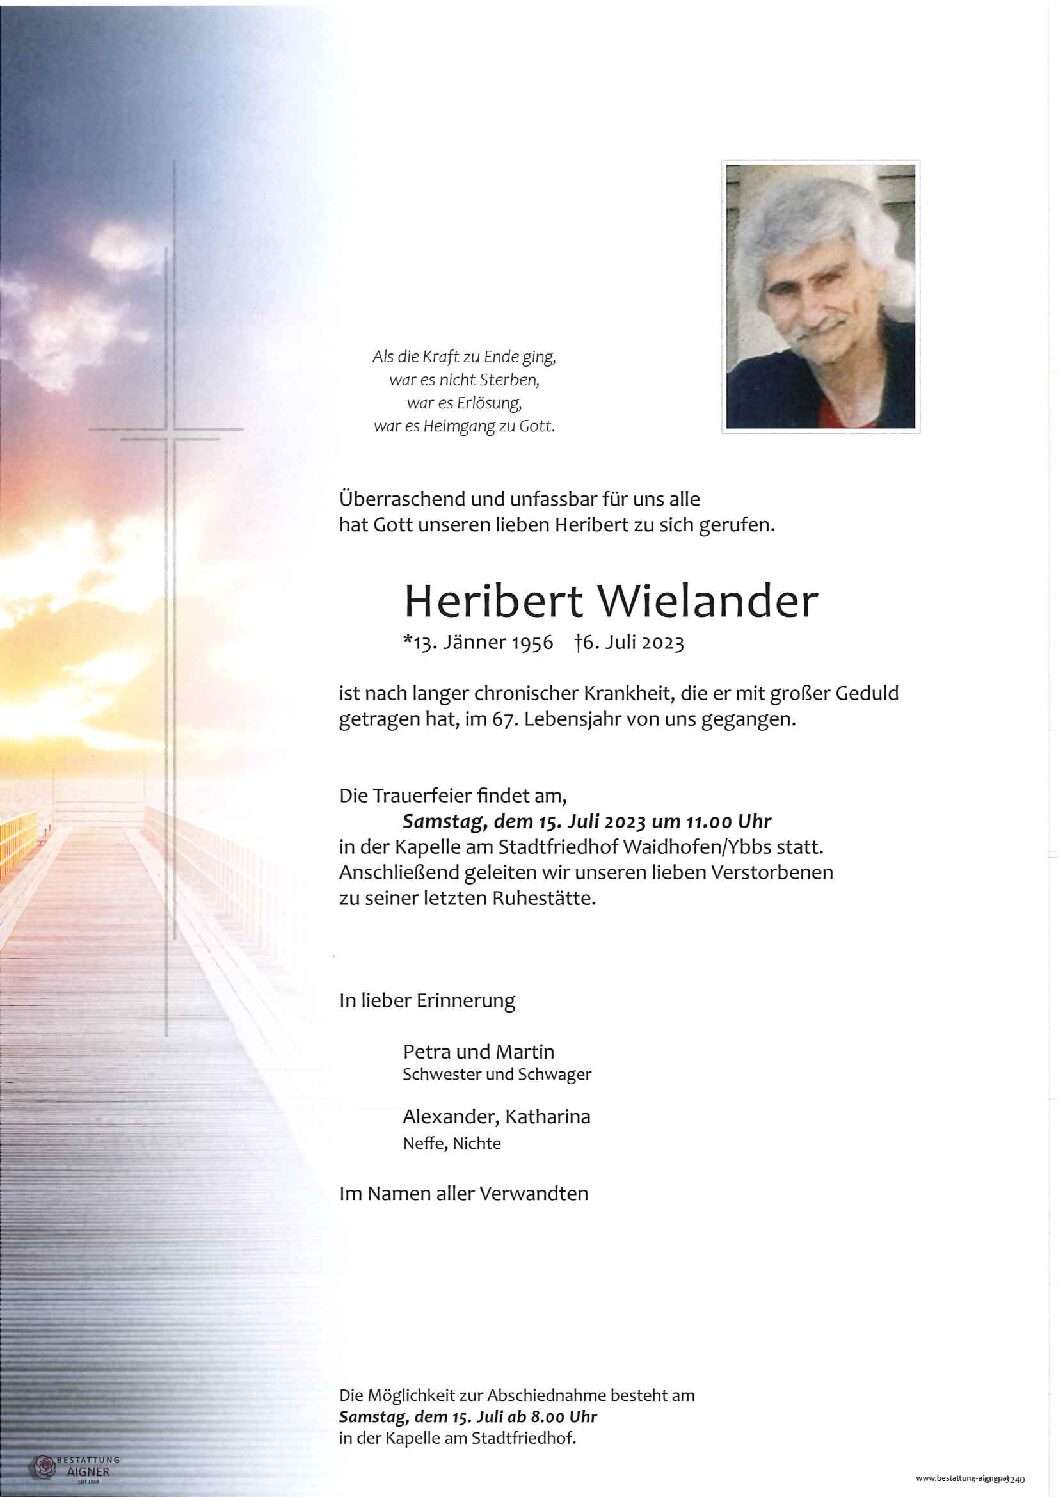 Heribert Wielander